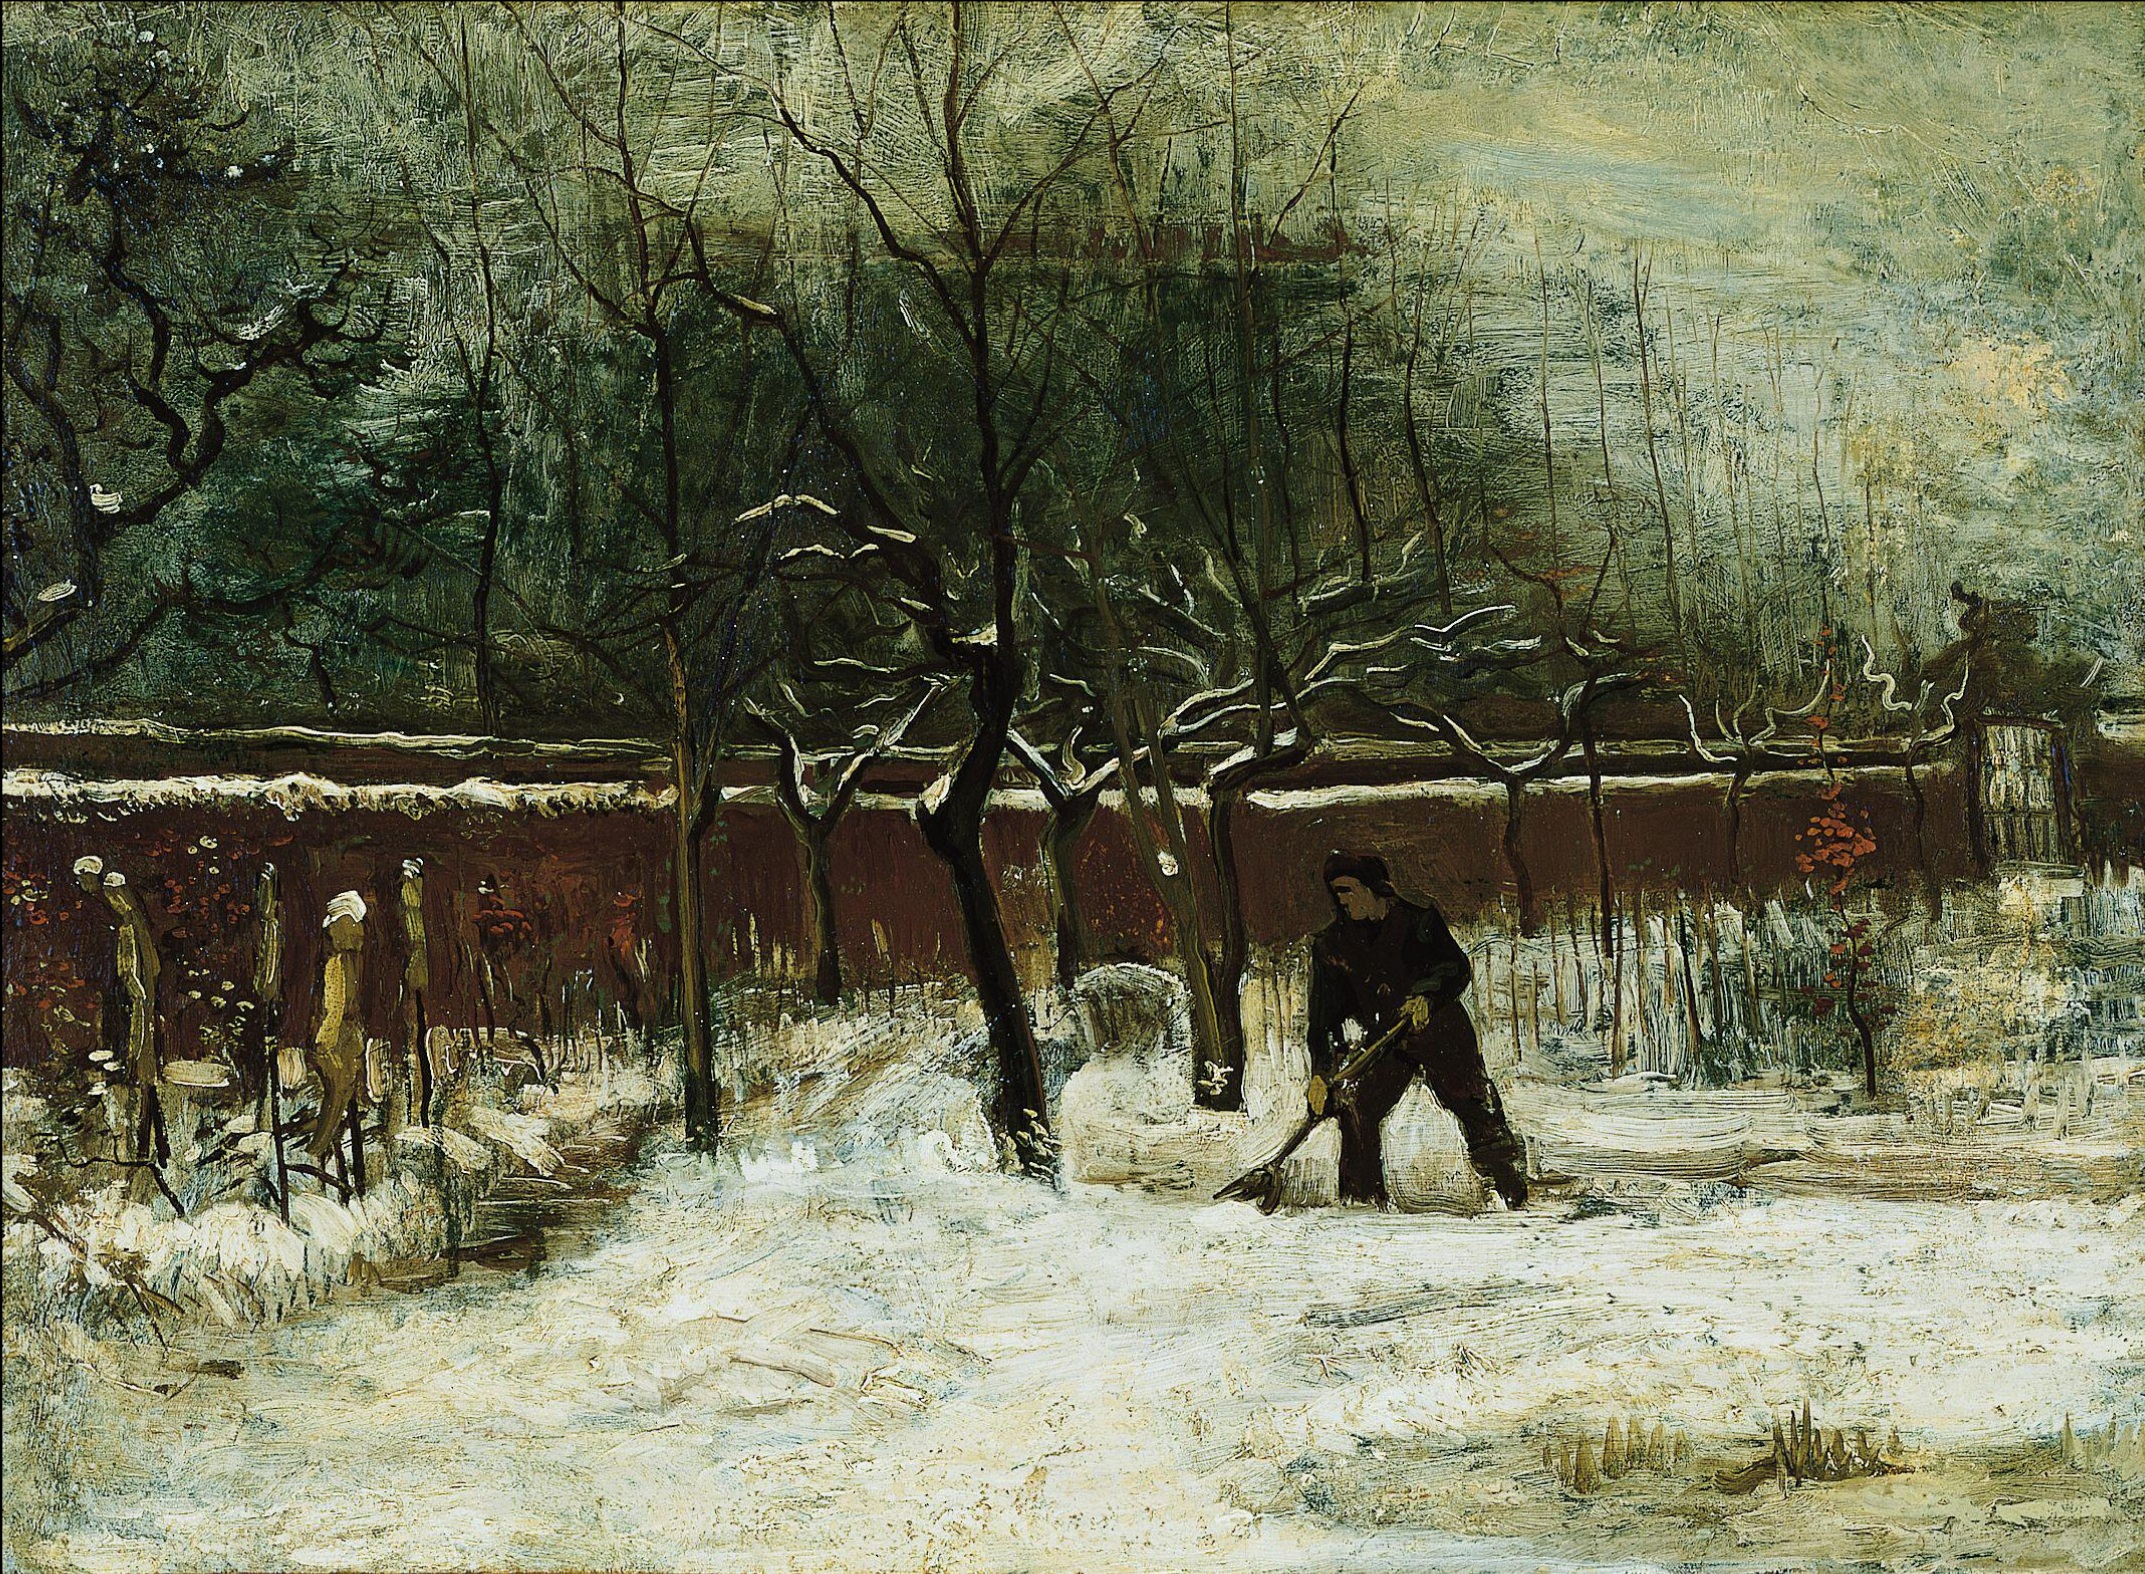 冬 by フィンセント・ ファン・ゴッホ - 1885年1月 - 58.4 x 79.1 cm 